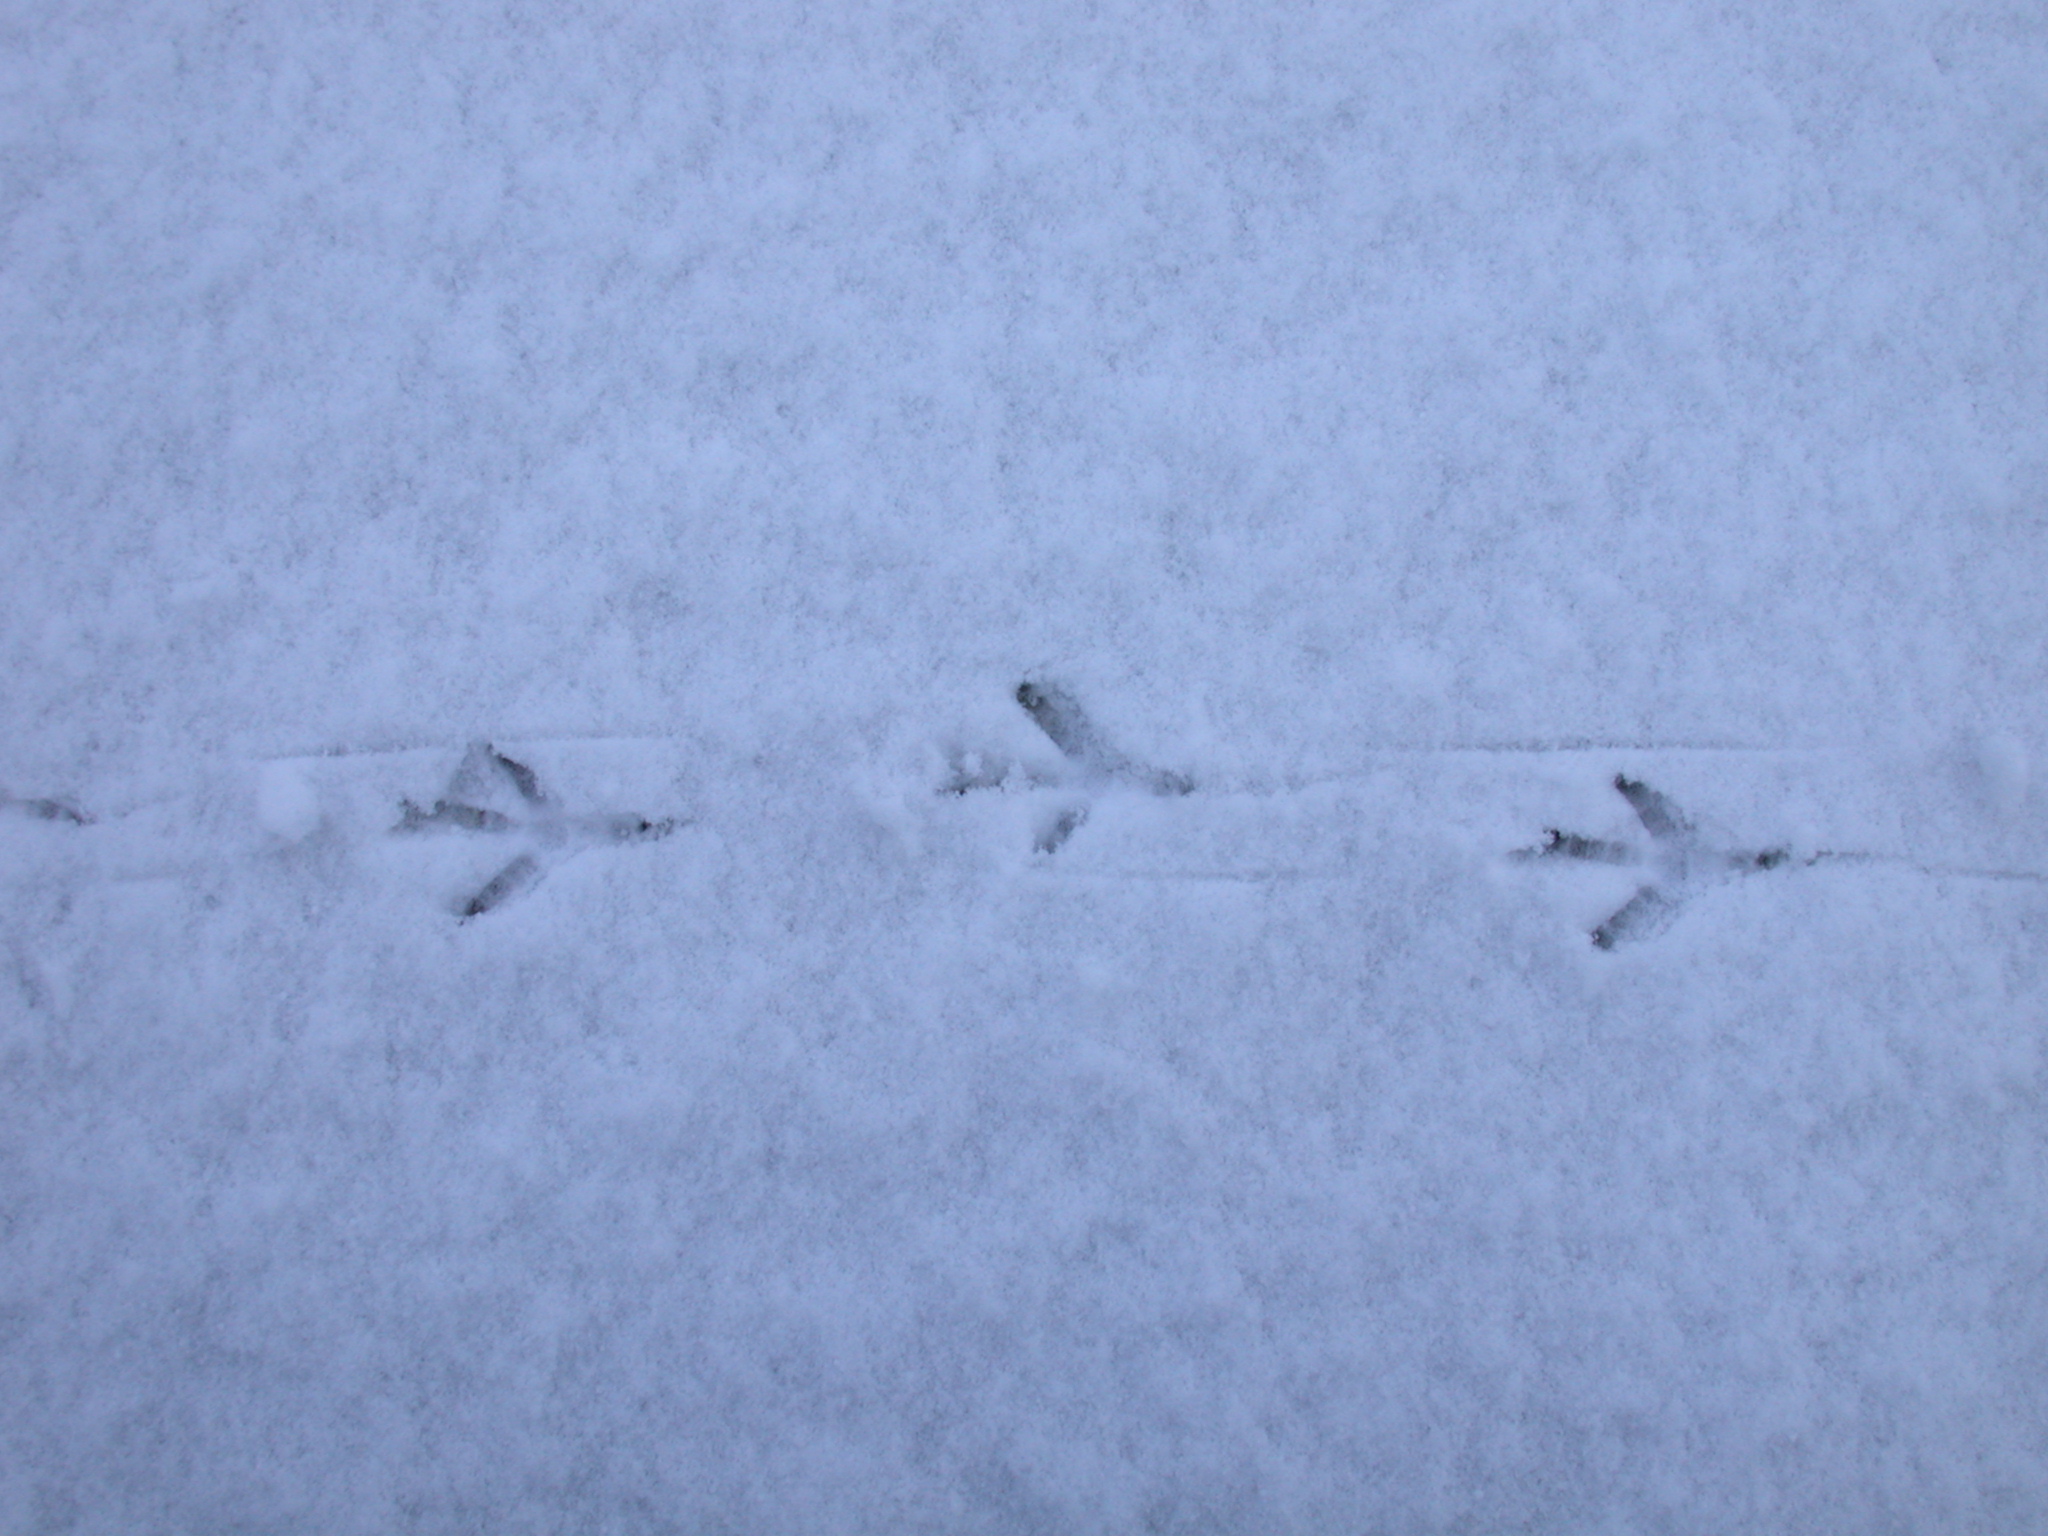 bird foot prints in snow inprints